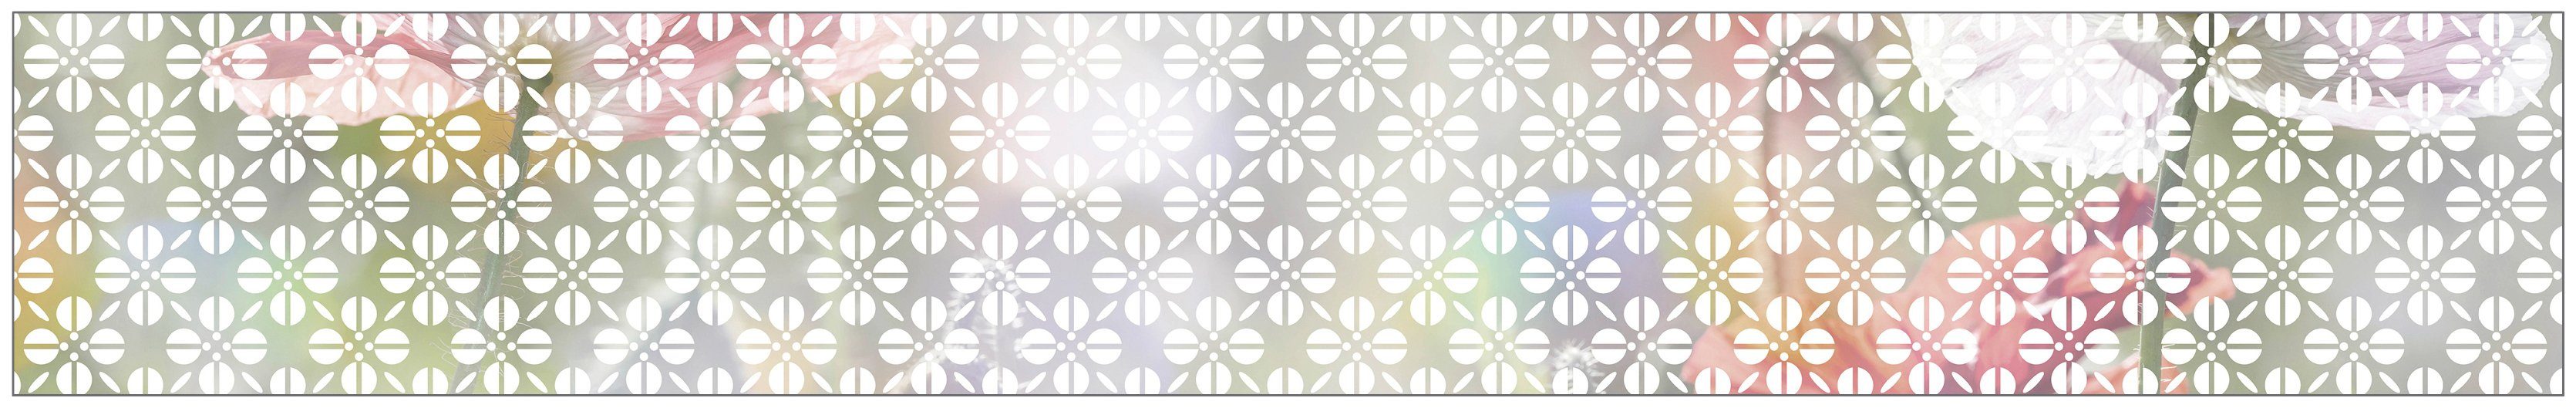 Fensterfolie Look Grafik Blumenmuster white, MySpotti, halbtransparent, glatt, 200 x 30 cm, statisch haftend | Fensterfolien